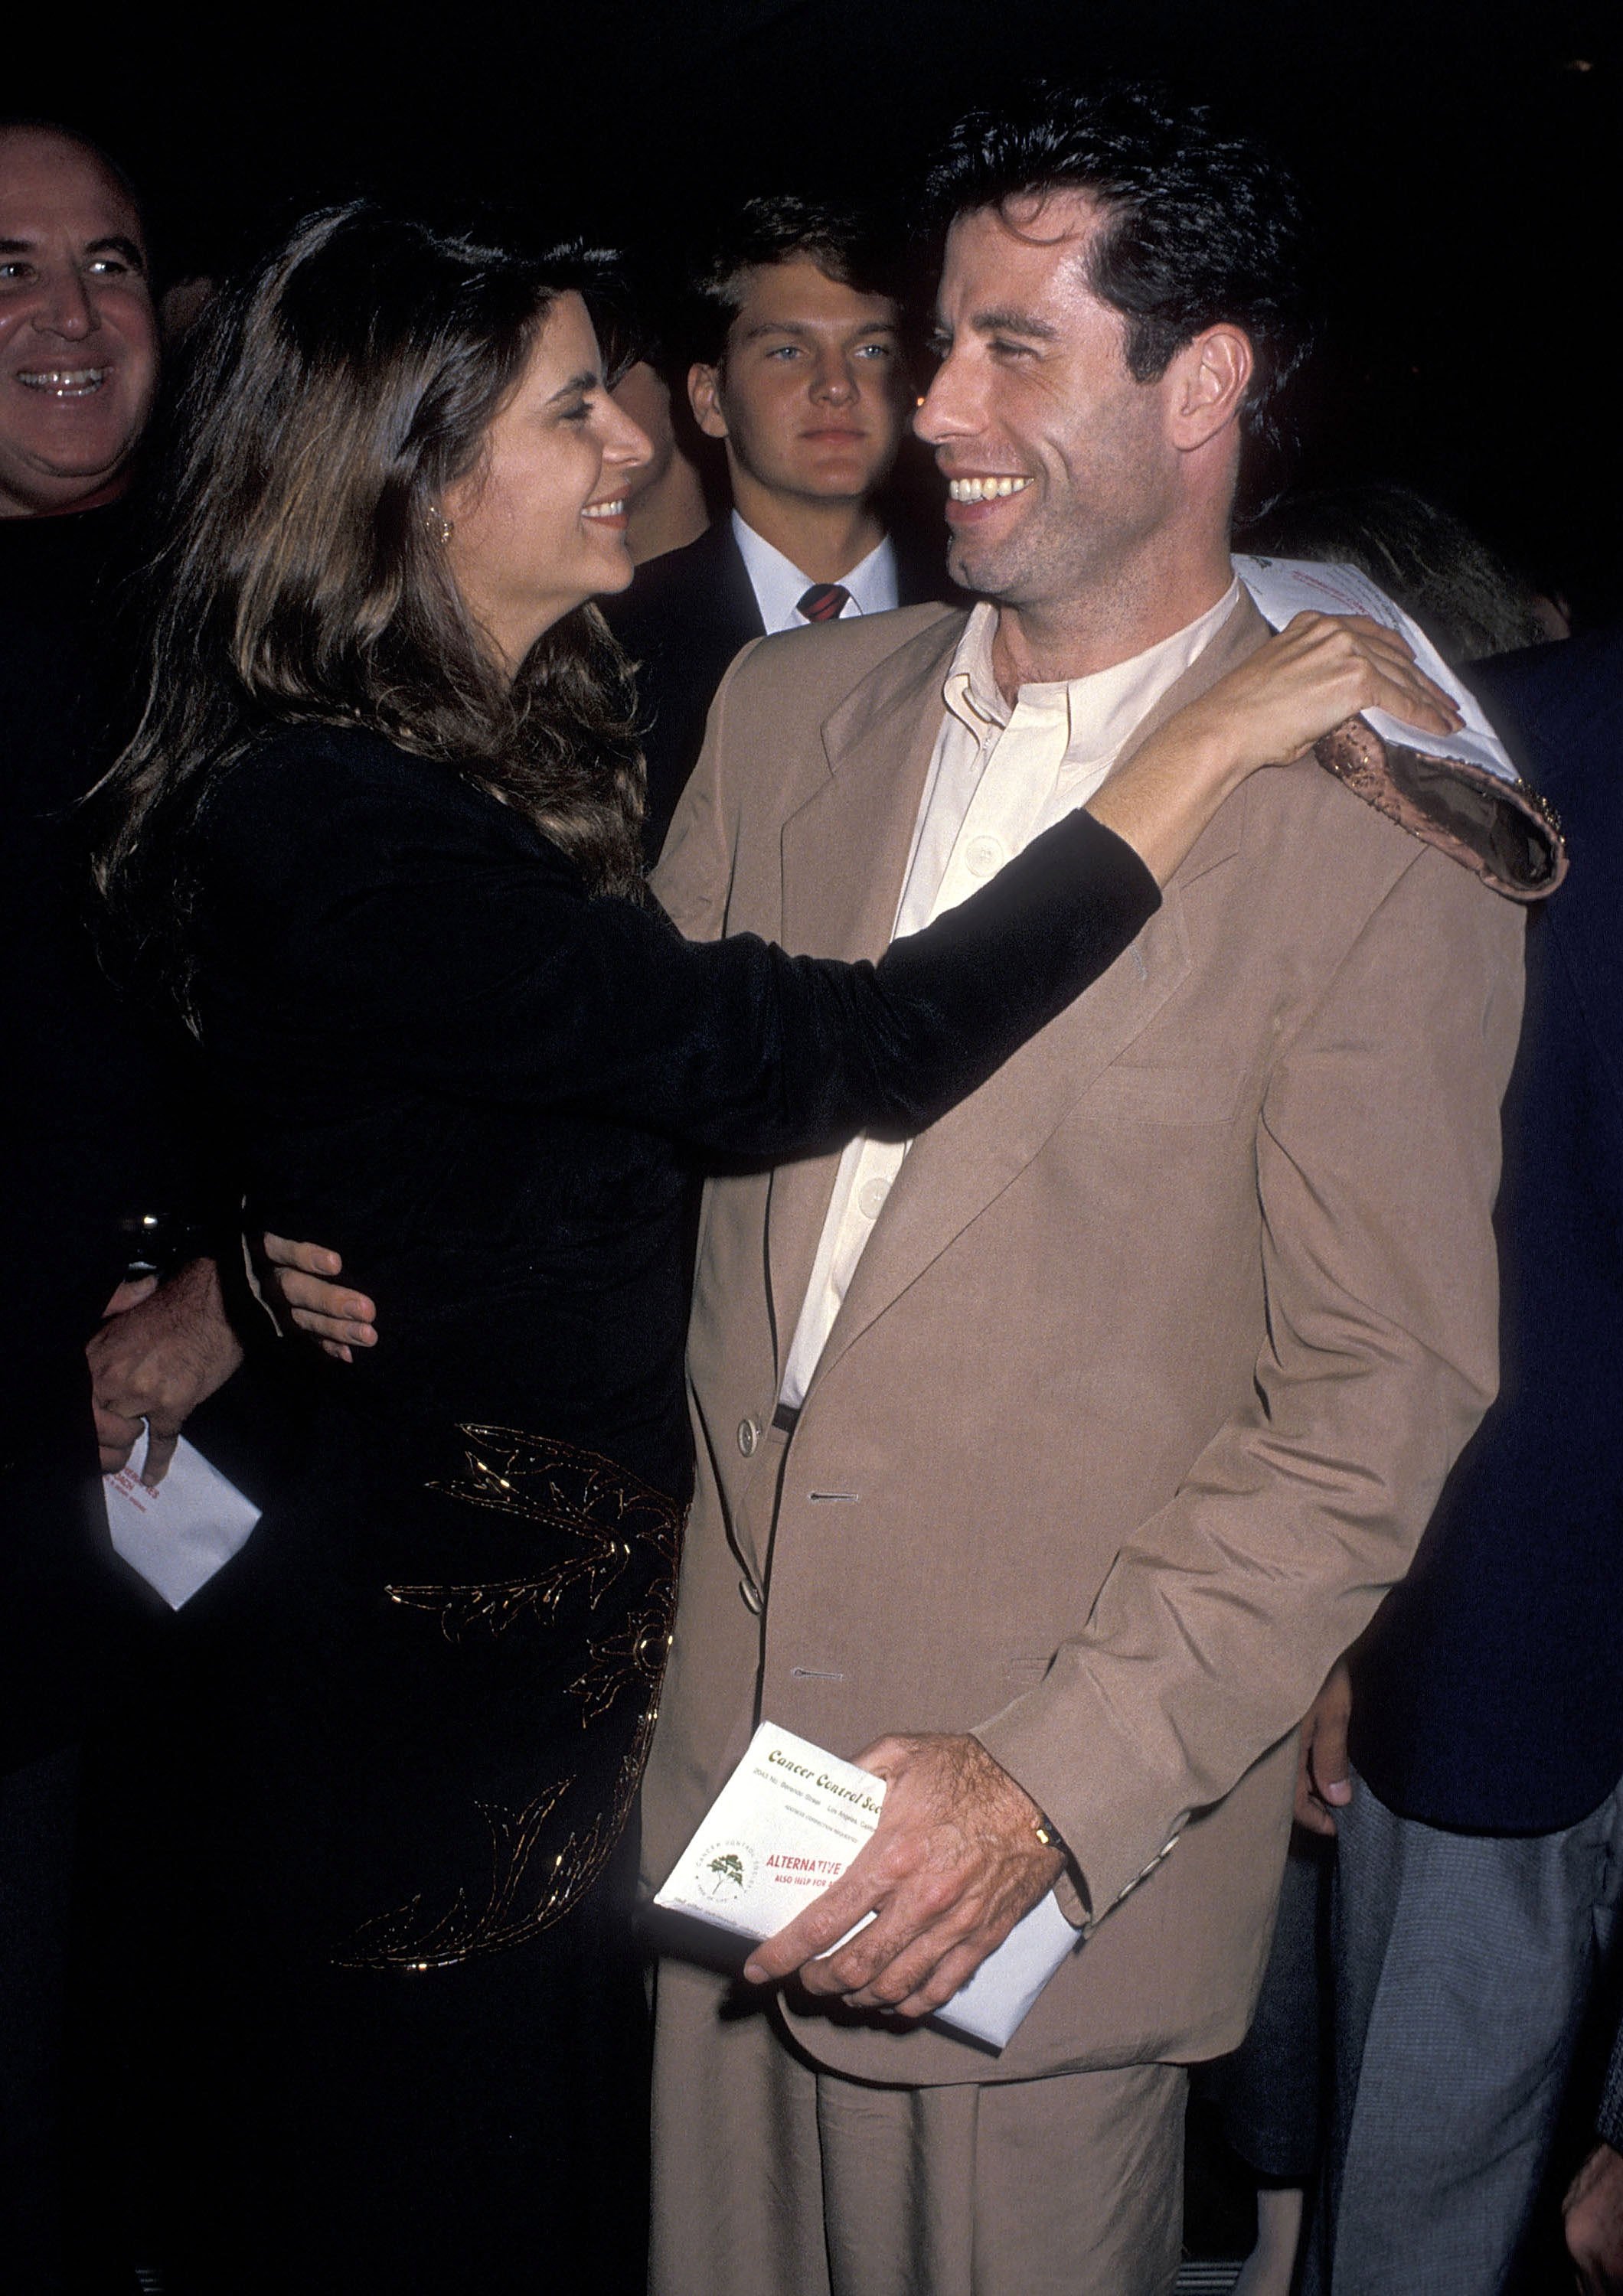 Kirstey Alley y John Travolta asisten al estreno de 'Look Who's Talking' en Beverly Hills el 12 de octubre de 1989 en la Academia de Artes y Ciencias Cinematográficas de Beverly Hills | Foto: Getty Images